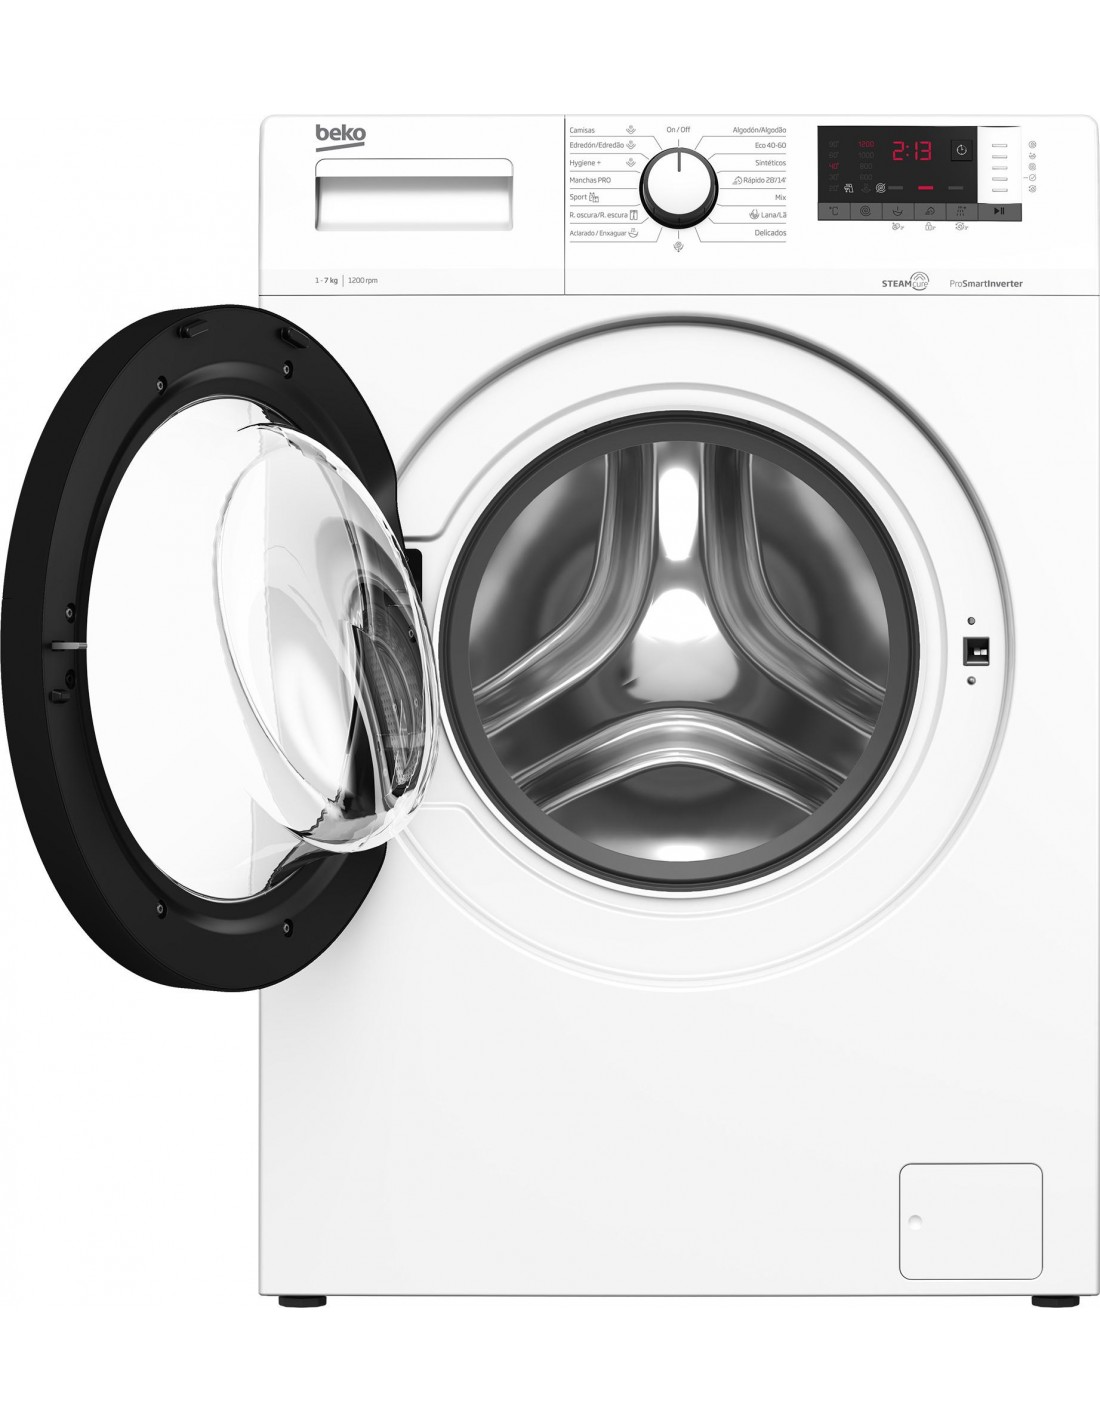 Las mejores ofertas en Beko lavadoras, secadoras, piezas y accesorios